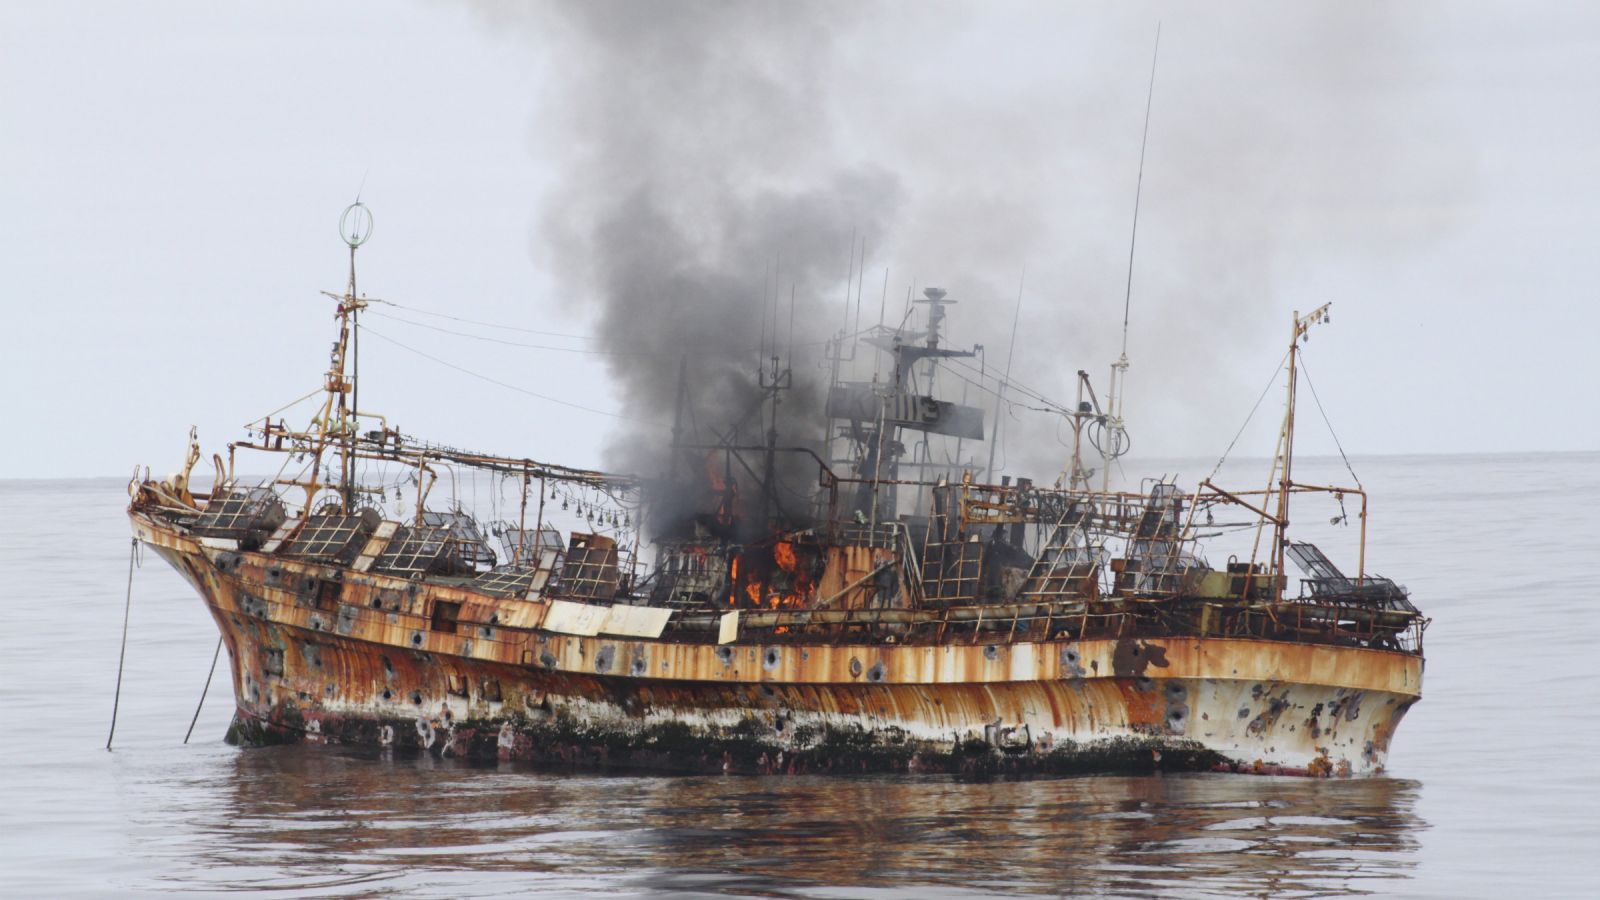 Con tàu Jian Seng bị nghi là phương tiện của những kẻ buôn người hoặc đánh bắt cá trái phép. Do không thể tìm thấy chủ sở hữu, nó đã bị đánh chìm để tiêu hủy. 